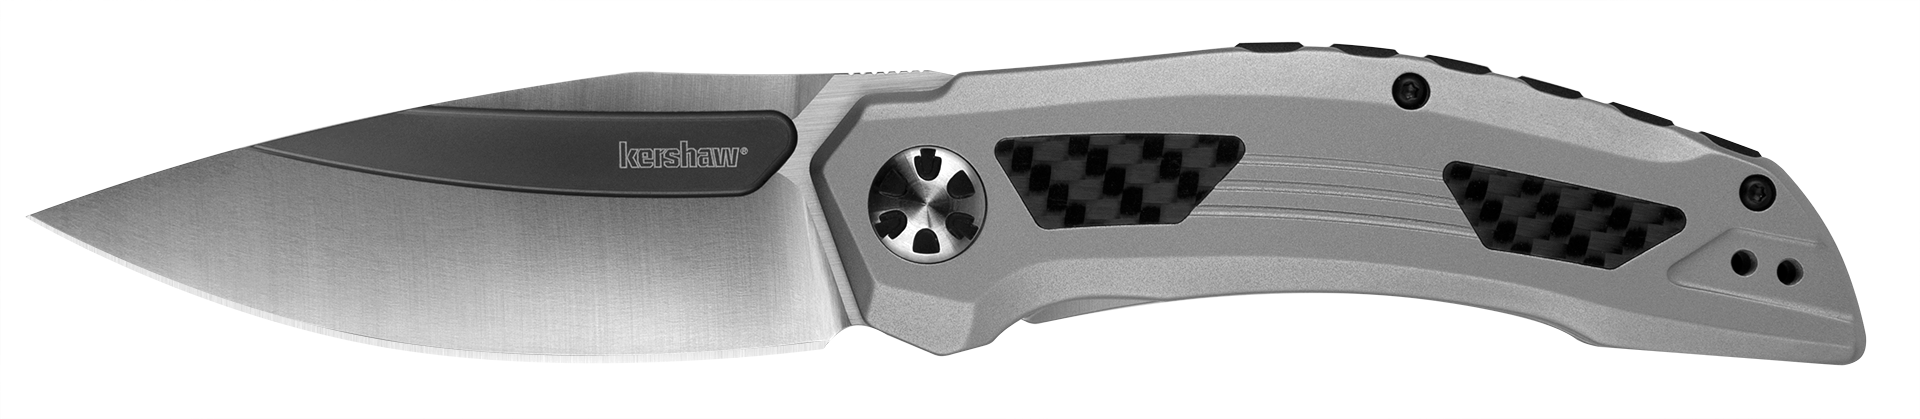 Kershaw Knives Stainless Steel & Carbon Fiber Norad Frame Lock D2 Blade Pocket Knife 5510